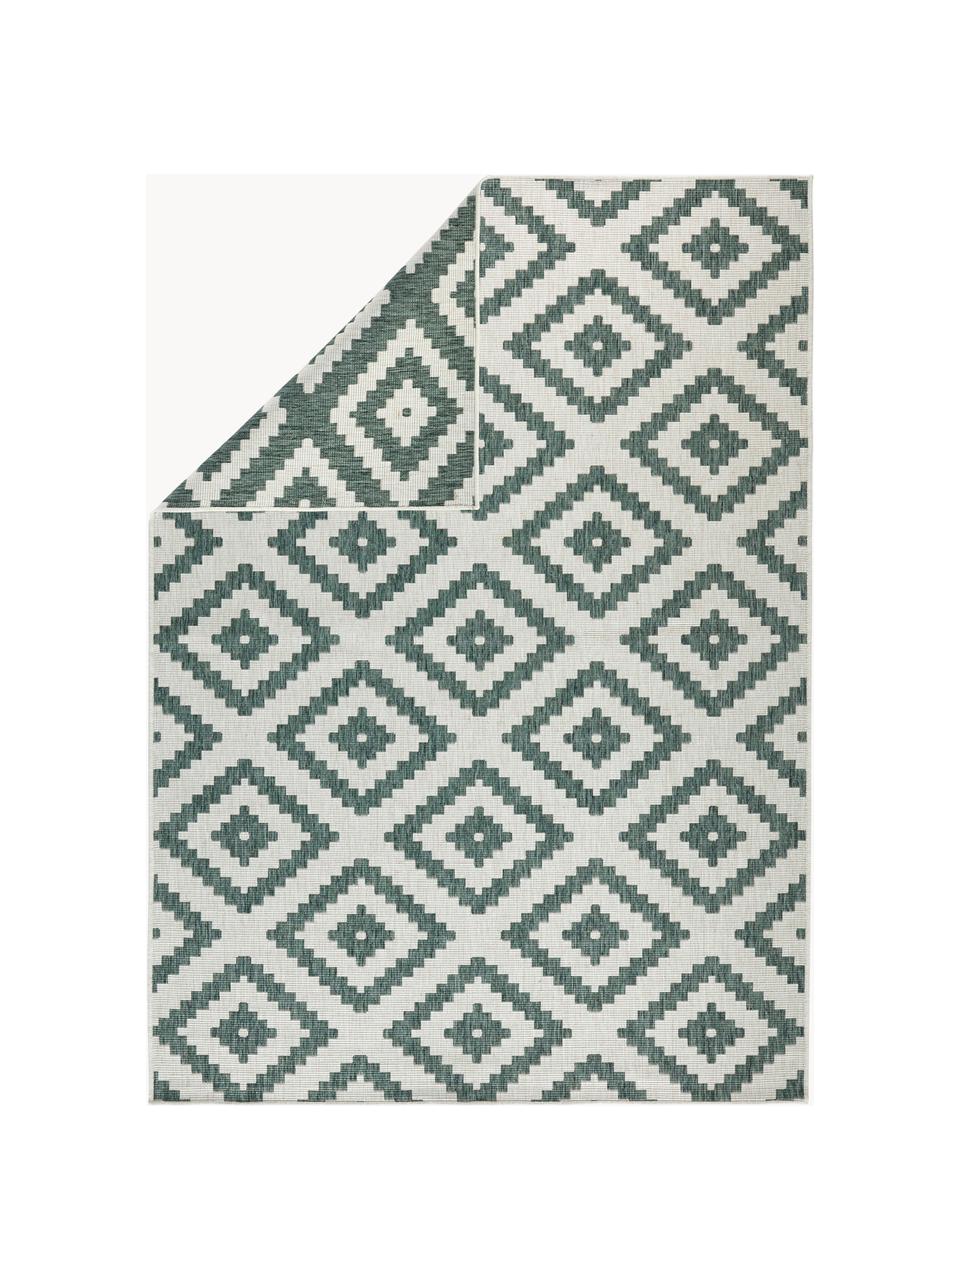 Interiérový a exteriérový oboustranný koberec Malta, 100 % polypropylen, Tlumeně bílá, tmavě zelená, Š 200 cm, D 290 cm (velikost L)